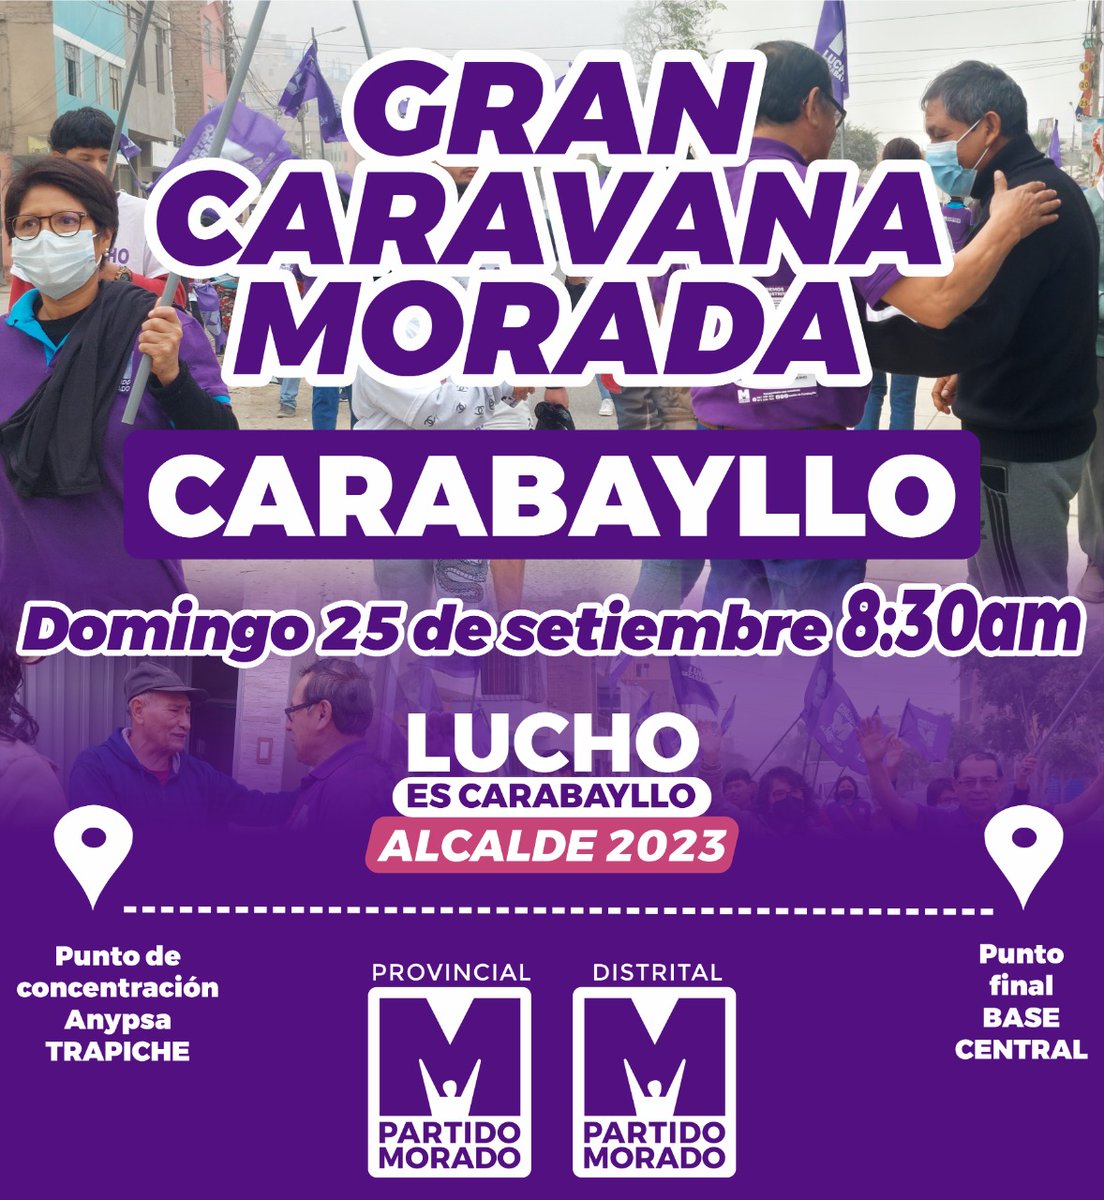 🟣#CaravanaMorada  #CARABAYLLO 🟣
 Gran caravana 'MANOS LIMPIAS - CERO CORRUPCIÓN' se realizará el domingo 25 de septiembre, hora de concentración 8:30 am. Punto de inicio ANYPSA TRAPICHE.
#Carabayllanos con las #ManosLimpias